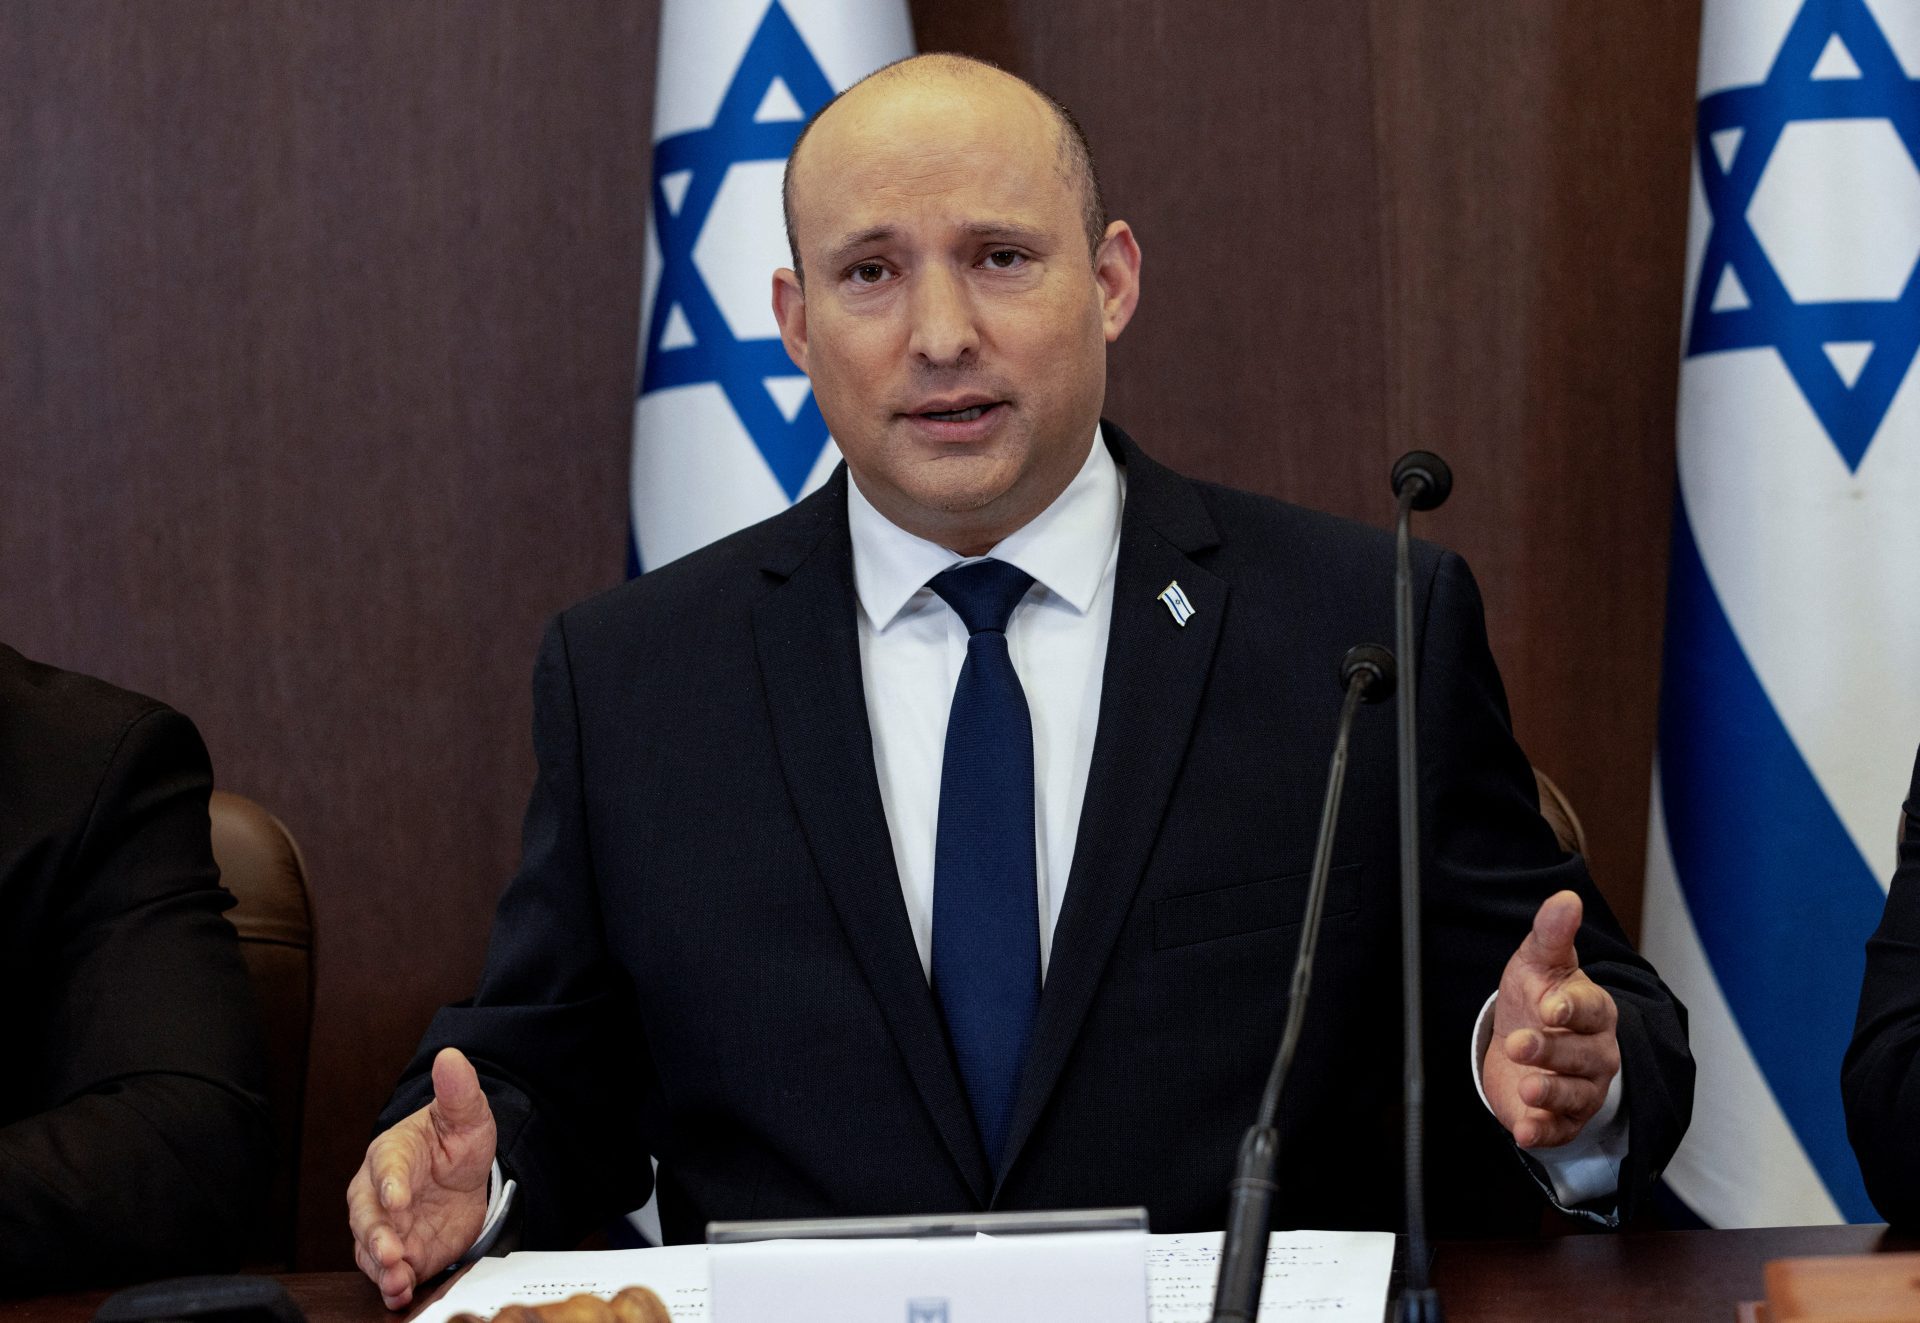 L’ex-Premier ministre israélien conseille de rester au pays